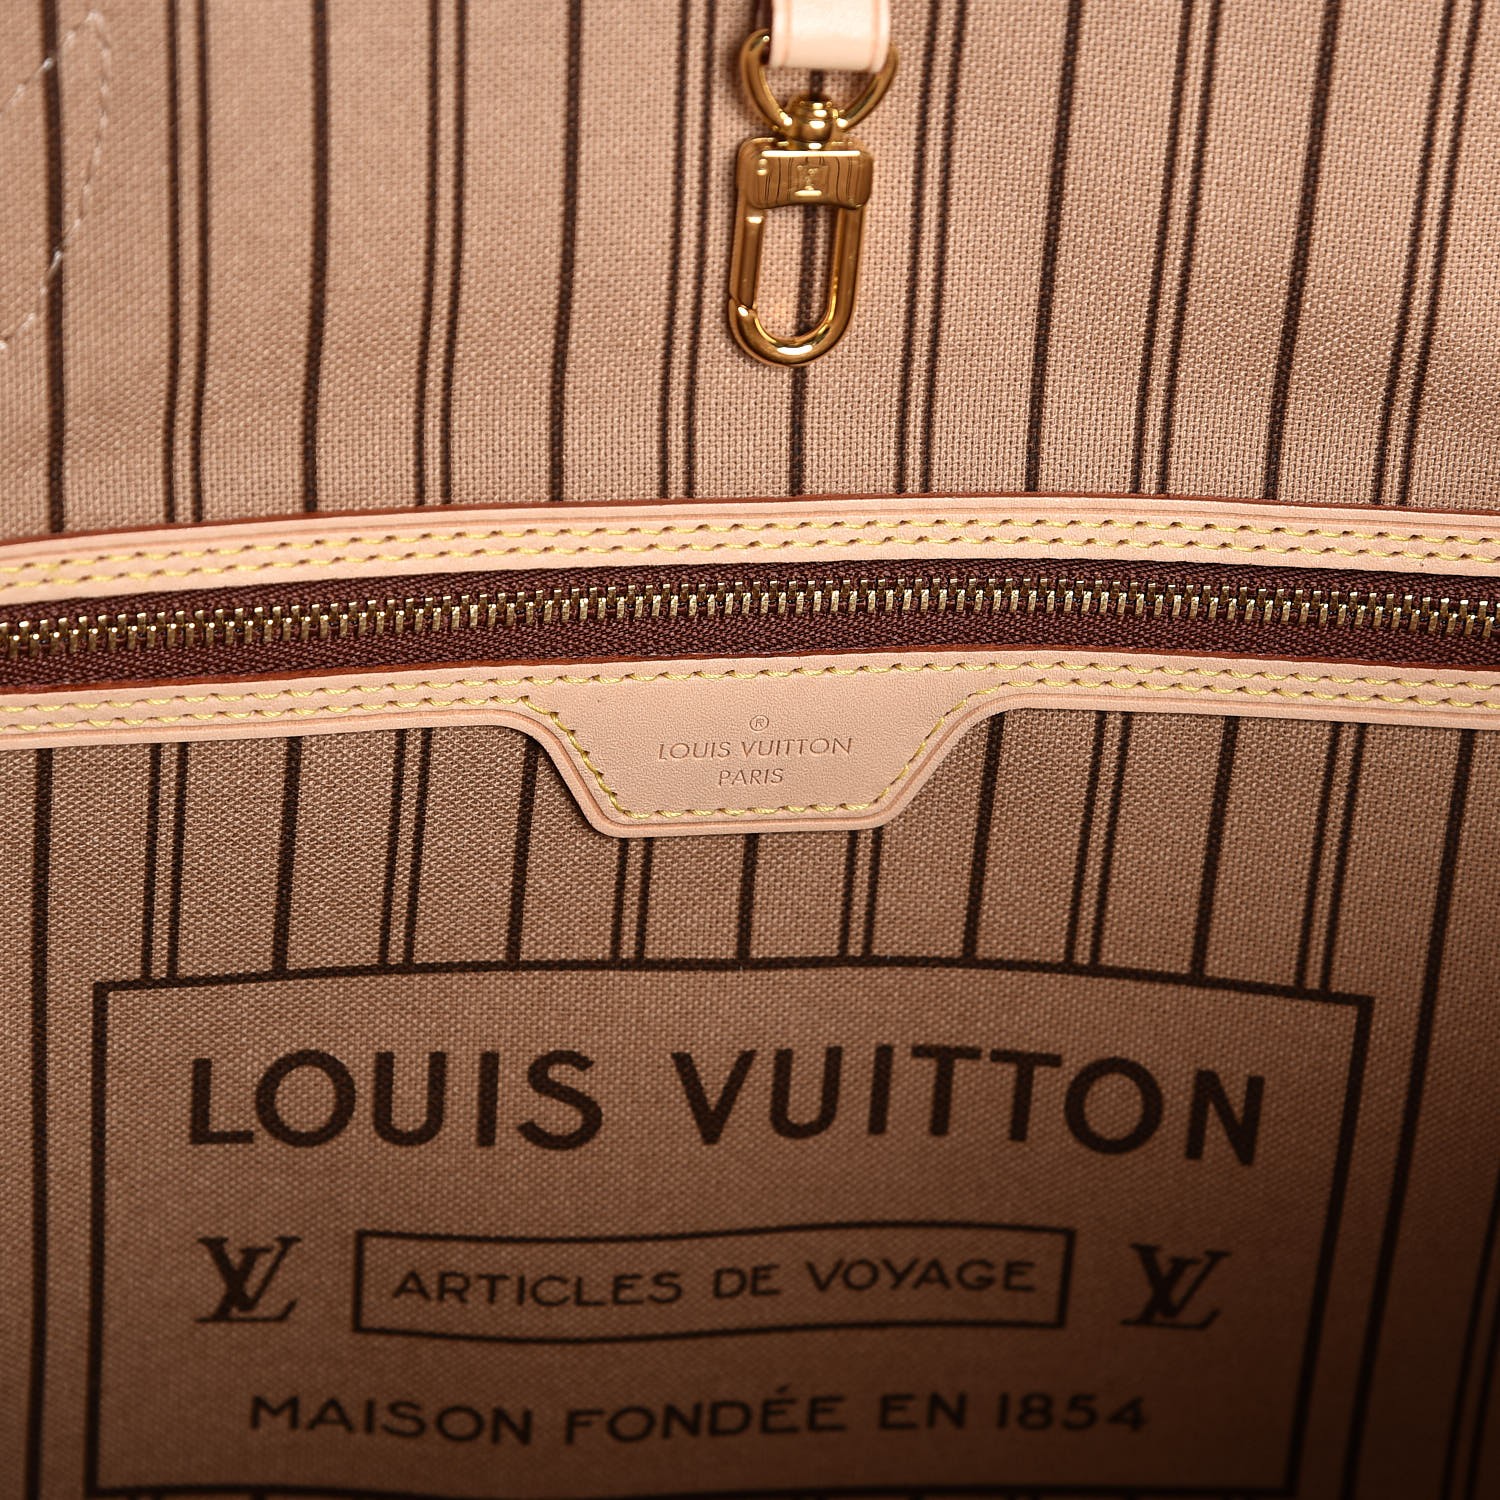 Louis Vuitton Articles De Voyage Maison Fondee En 1854 | Ventana Blog